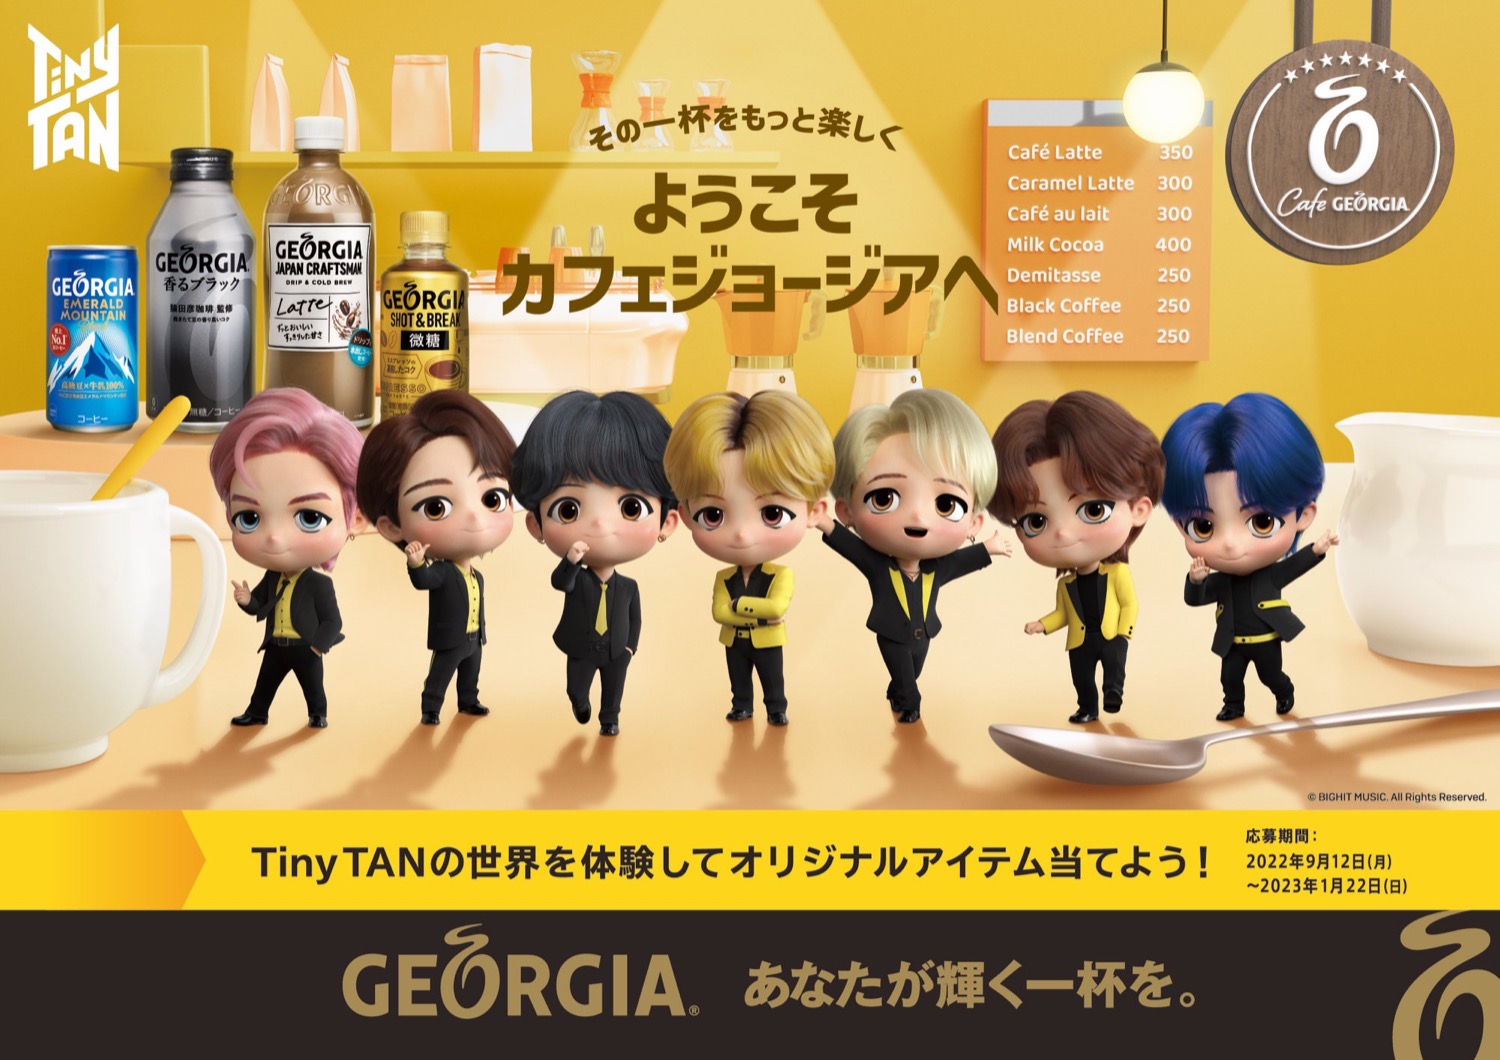 TinyTAN カフェジョージア開店イベント in 渋谷 9月13日より開催!